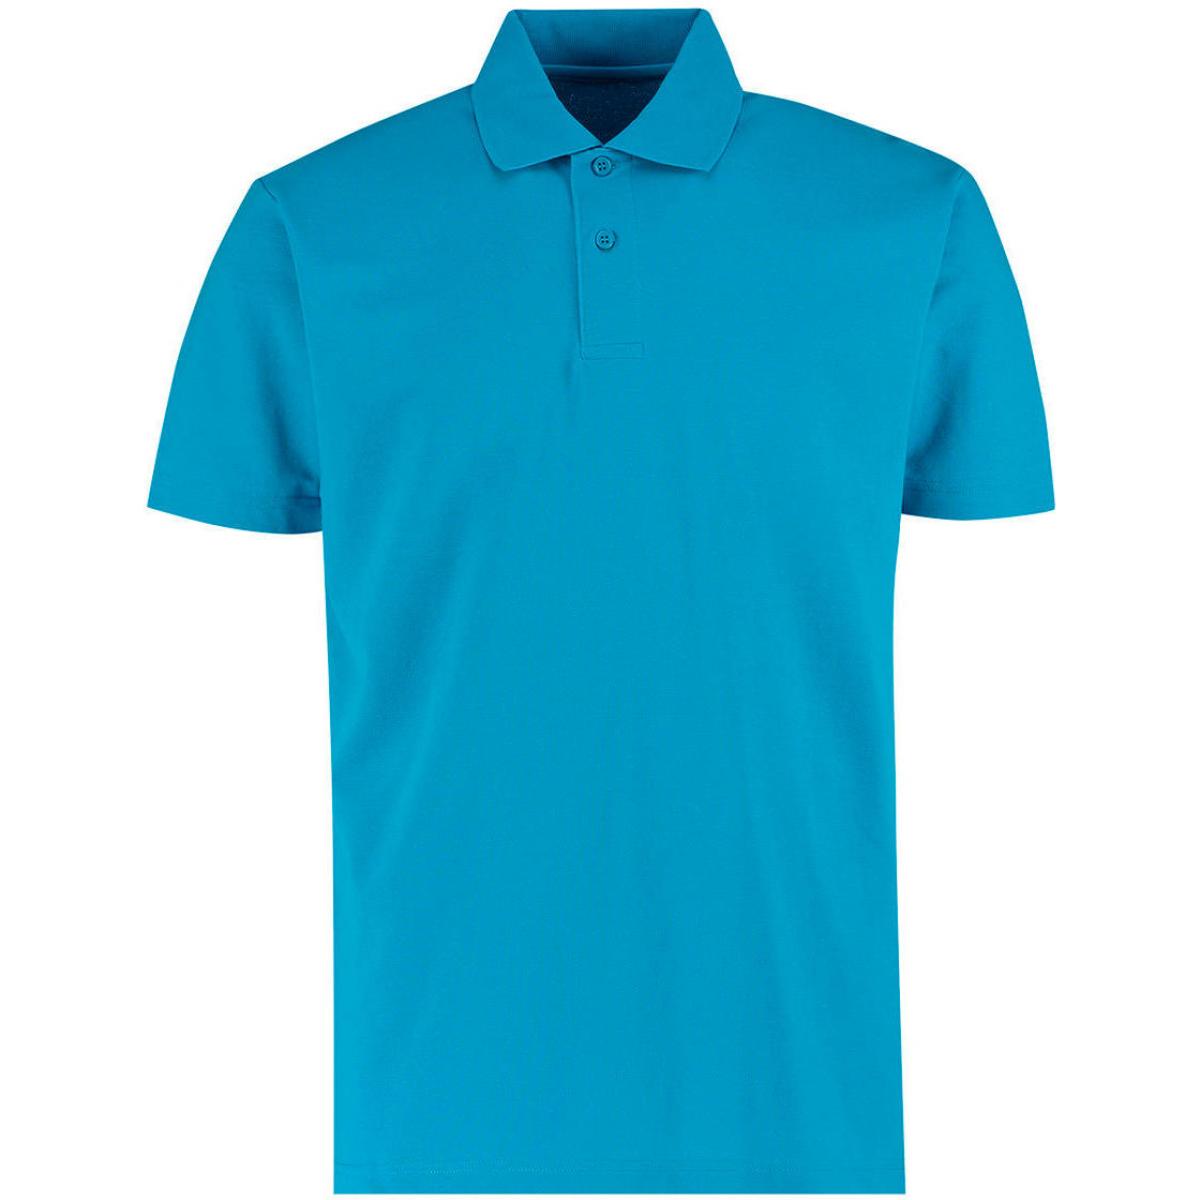 Hersteller: Kustom Kit Herstellernummer: KK422 Artikelbezeichnung: Men's Regular Fit Workforce Poloshirt für Herren Farbe: Turquoise